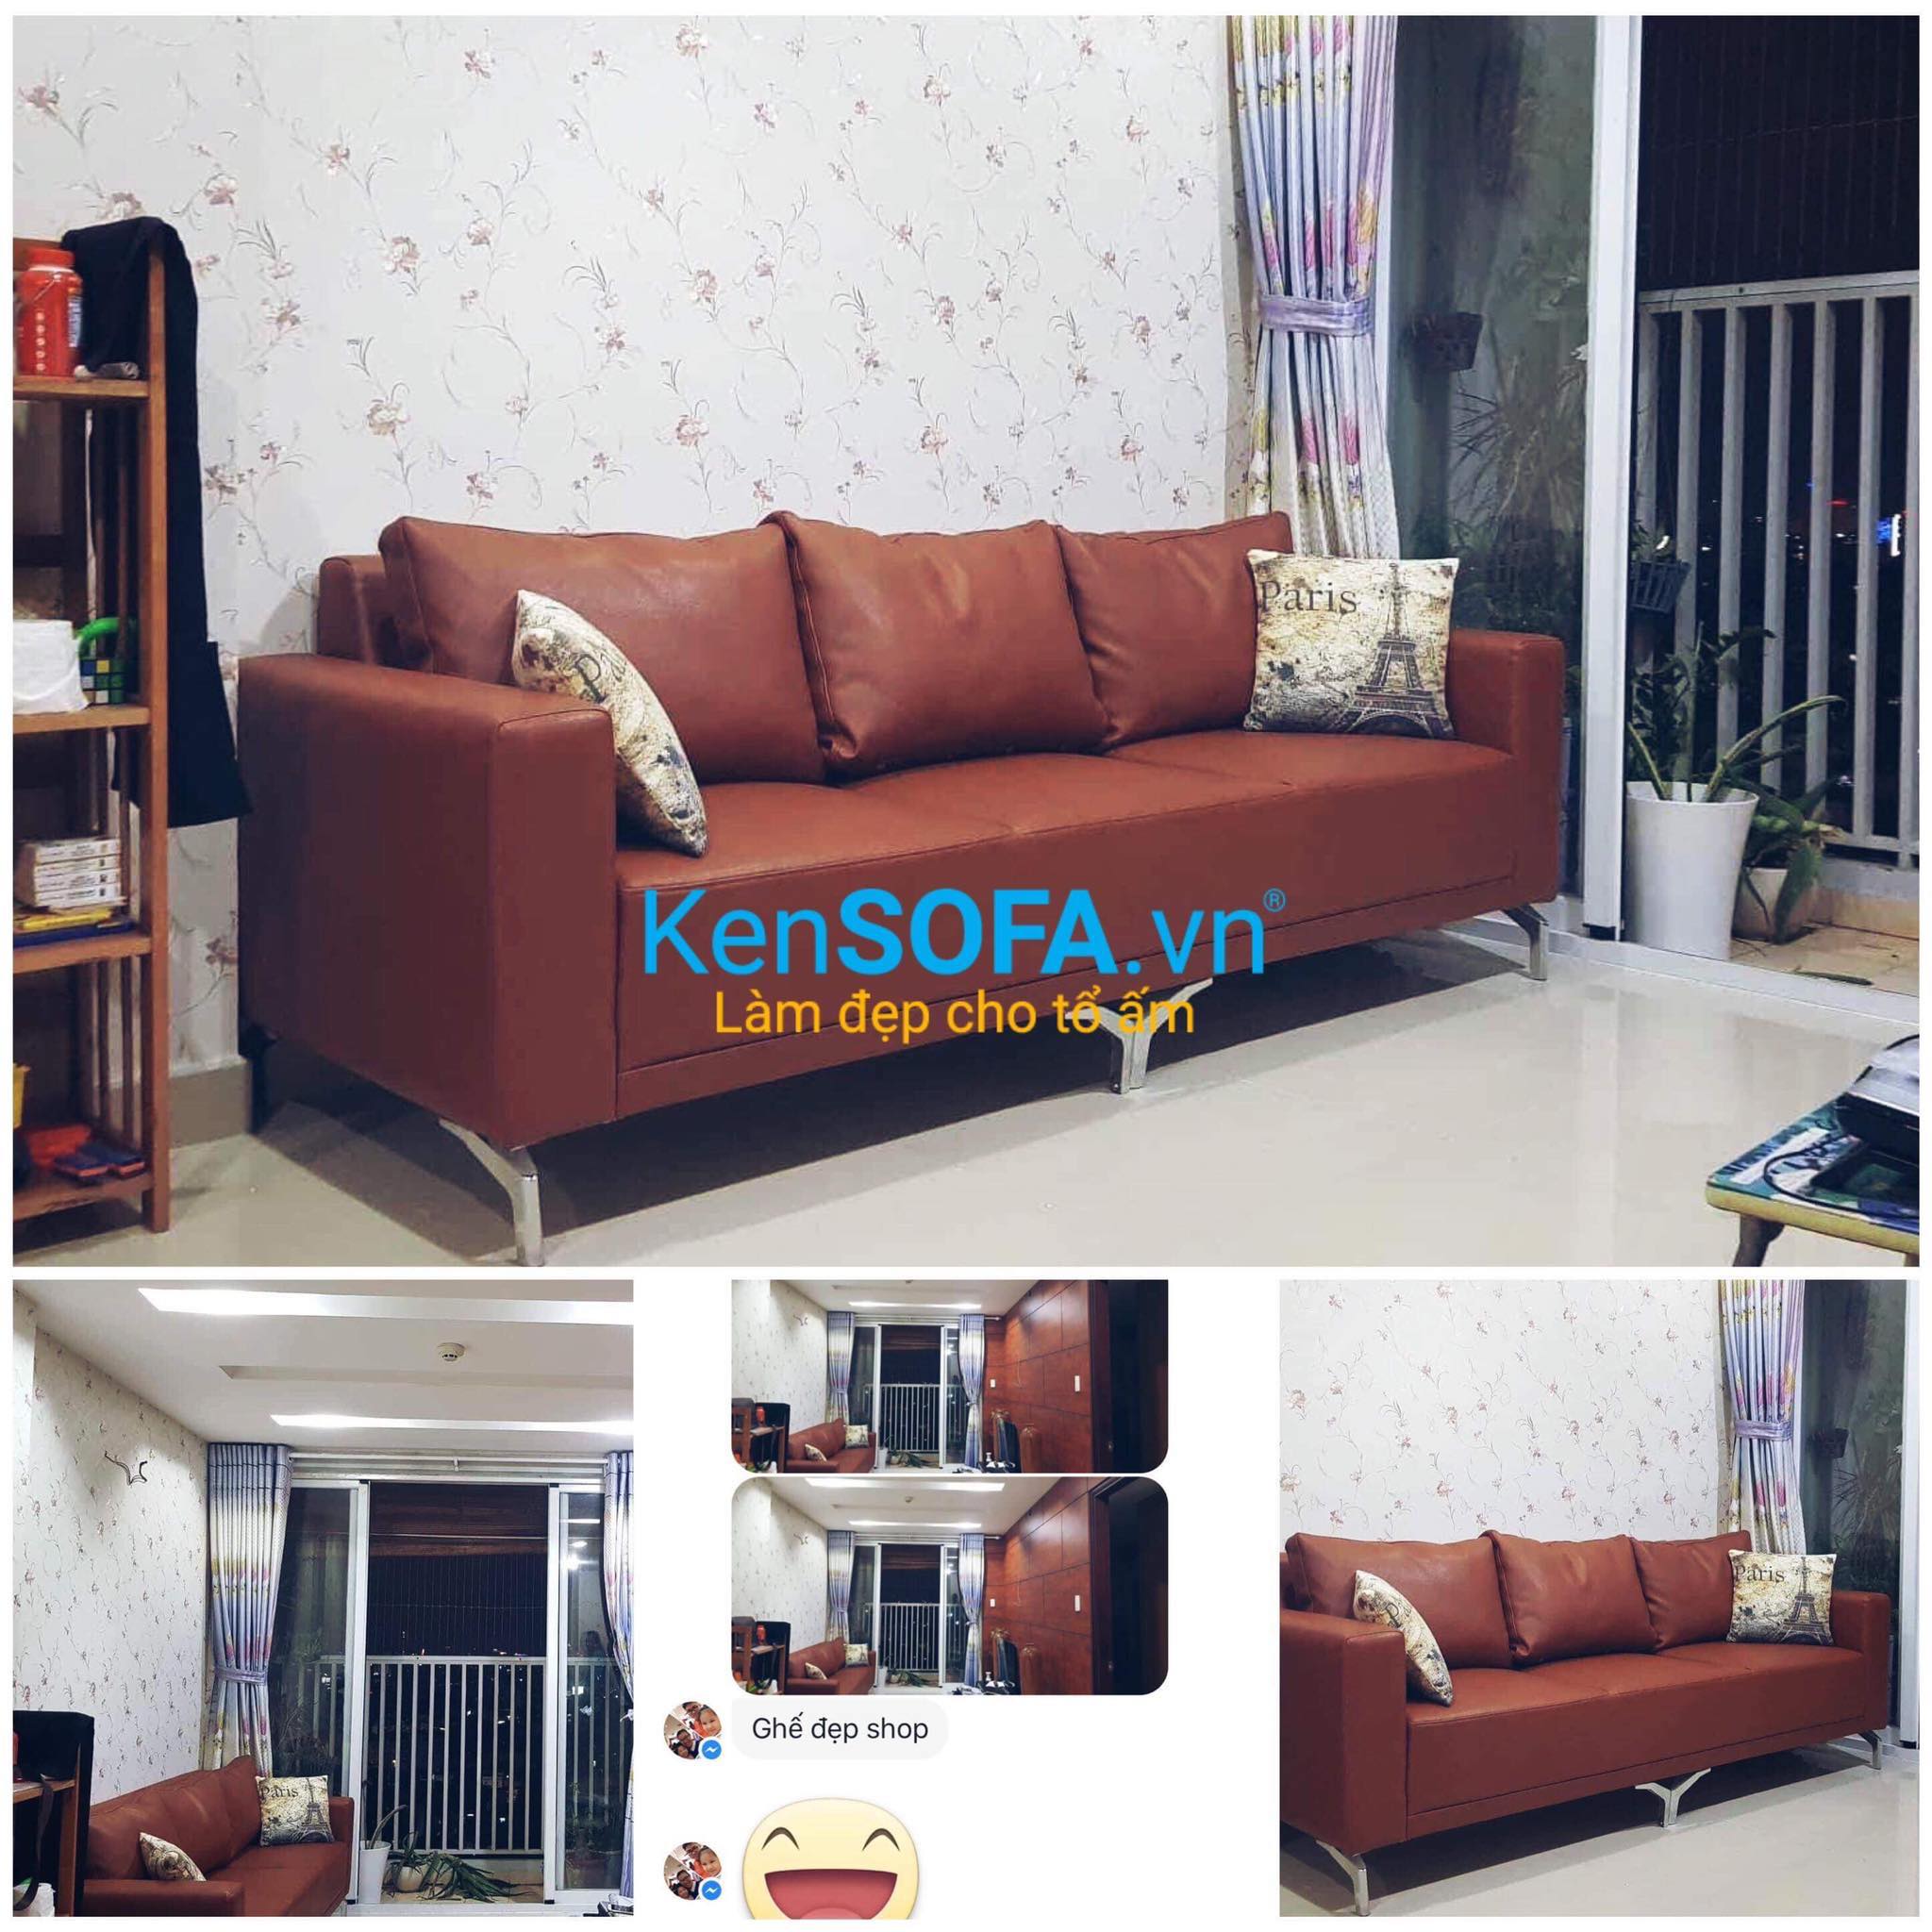 KenSOFA – đơn vị cung cấp ghế sofa giá rẻ quận Phú Nhuận